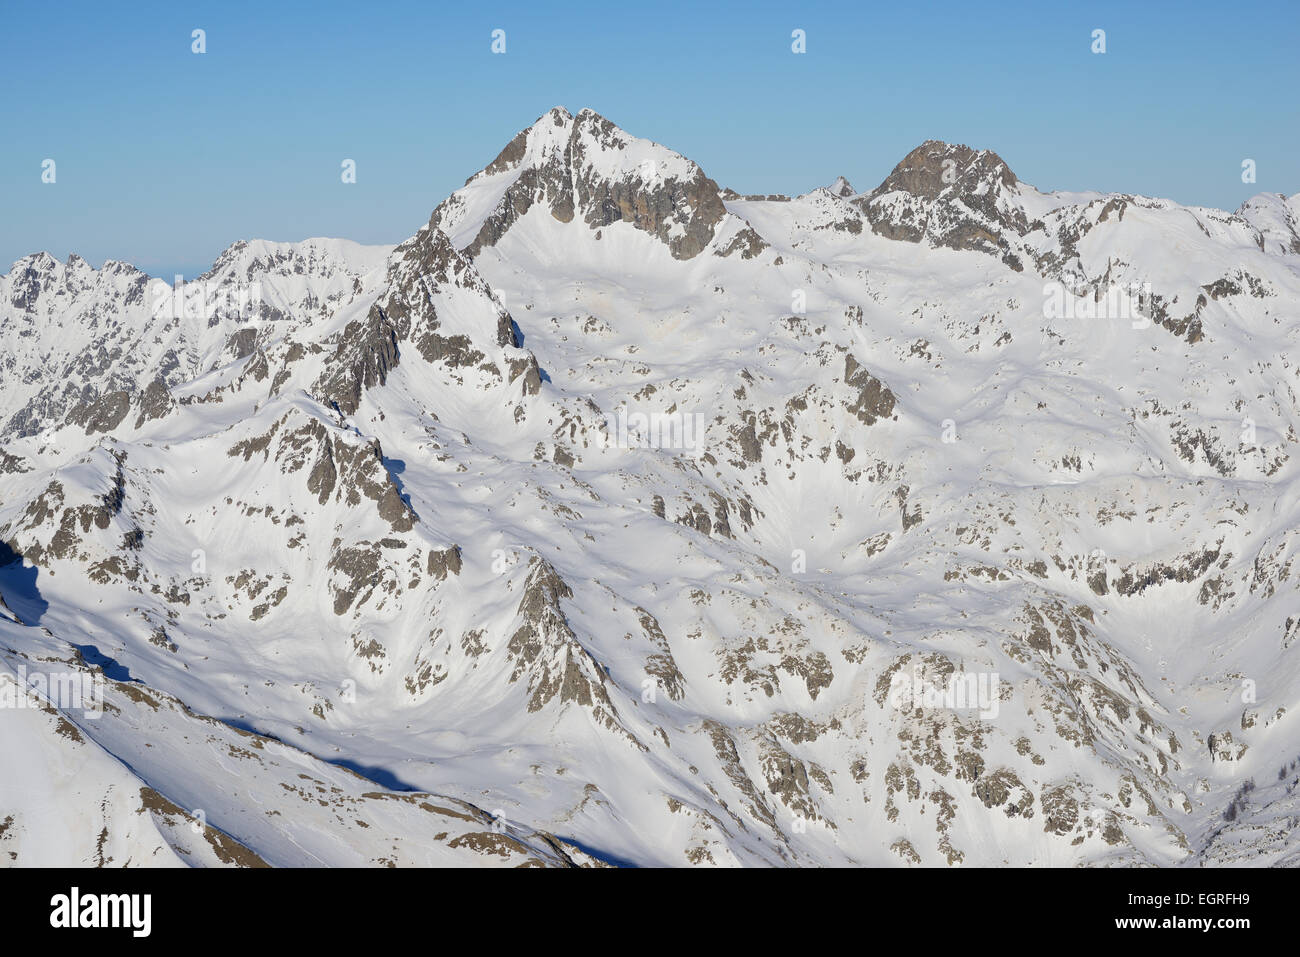 VUE AÉRIENNE.Pic de Gelas en hiver, c'est le sommet le plus élevé des Alpes-Maritimes (altitude : 3143m).Saint-Martin-Vésubie, France. Banque D'Images